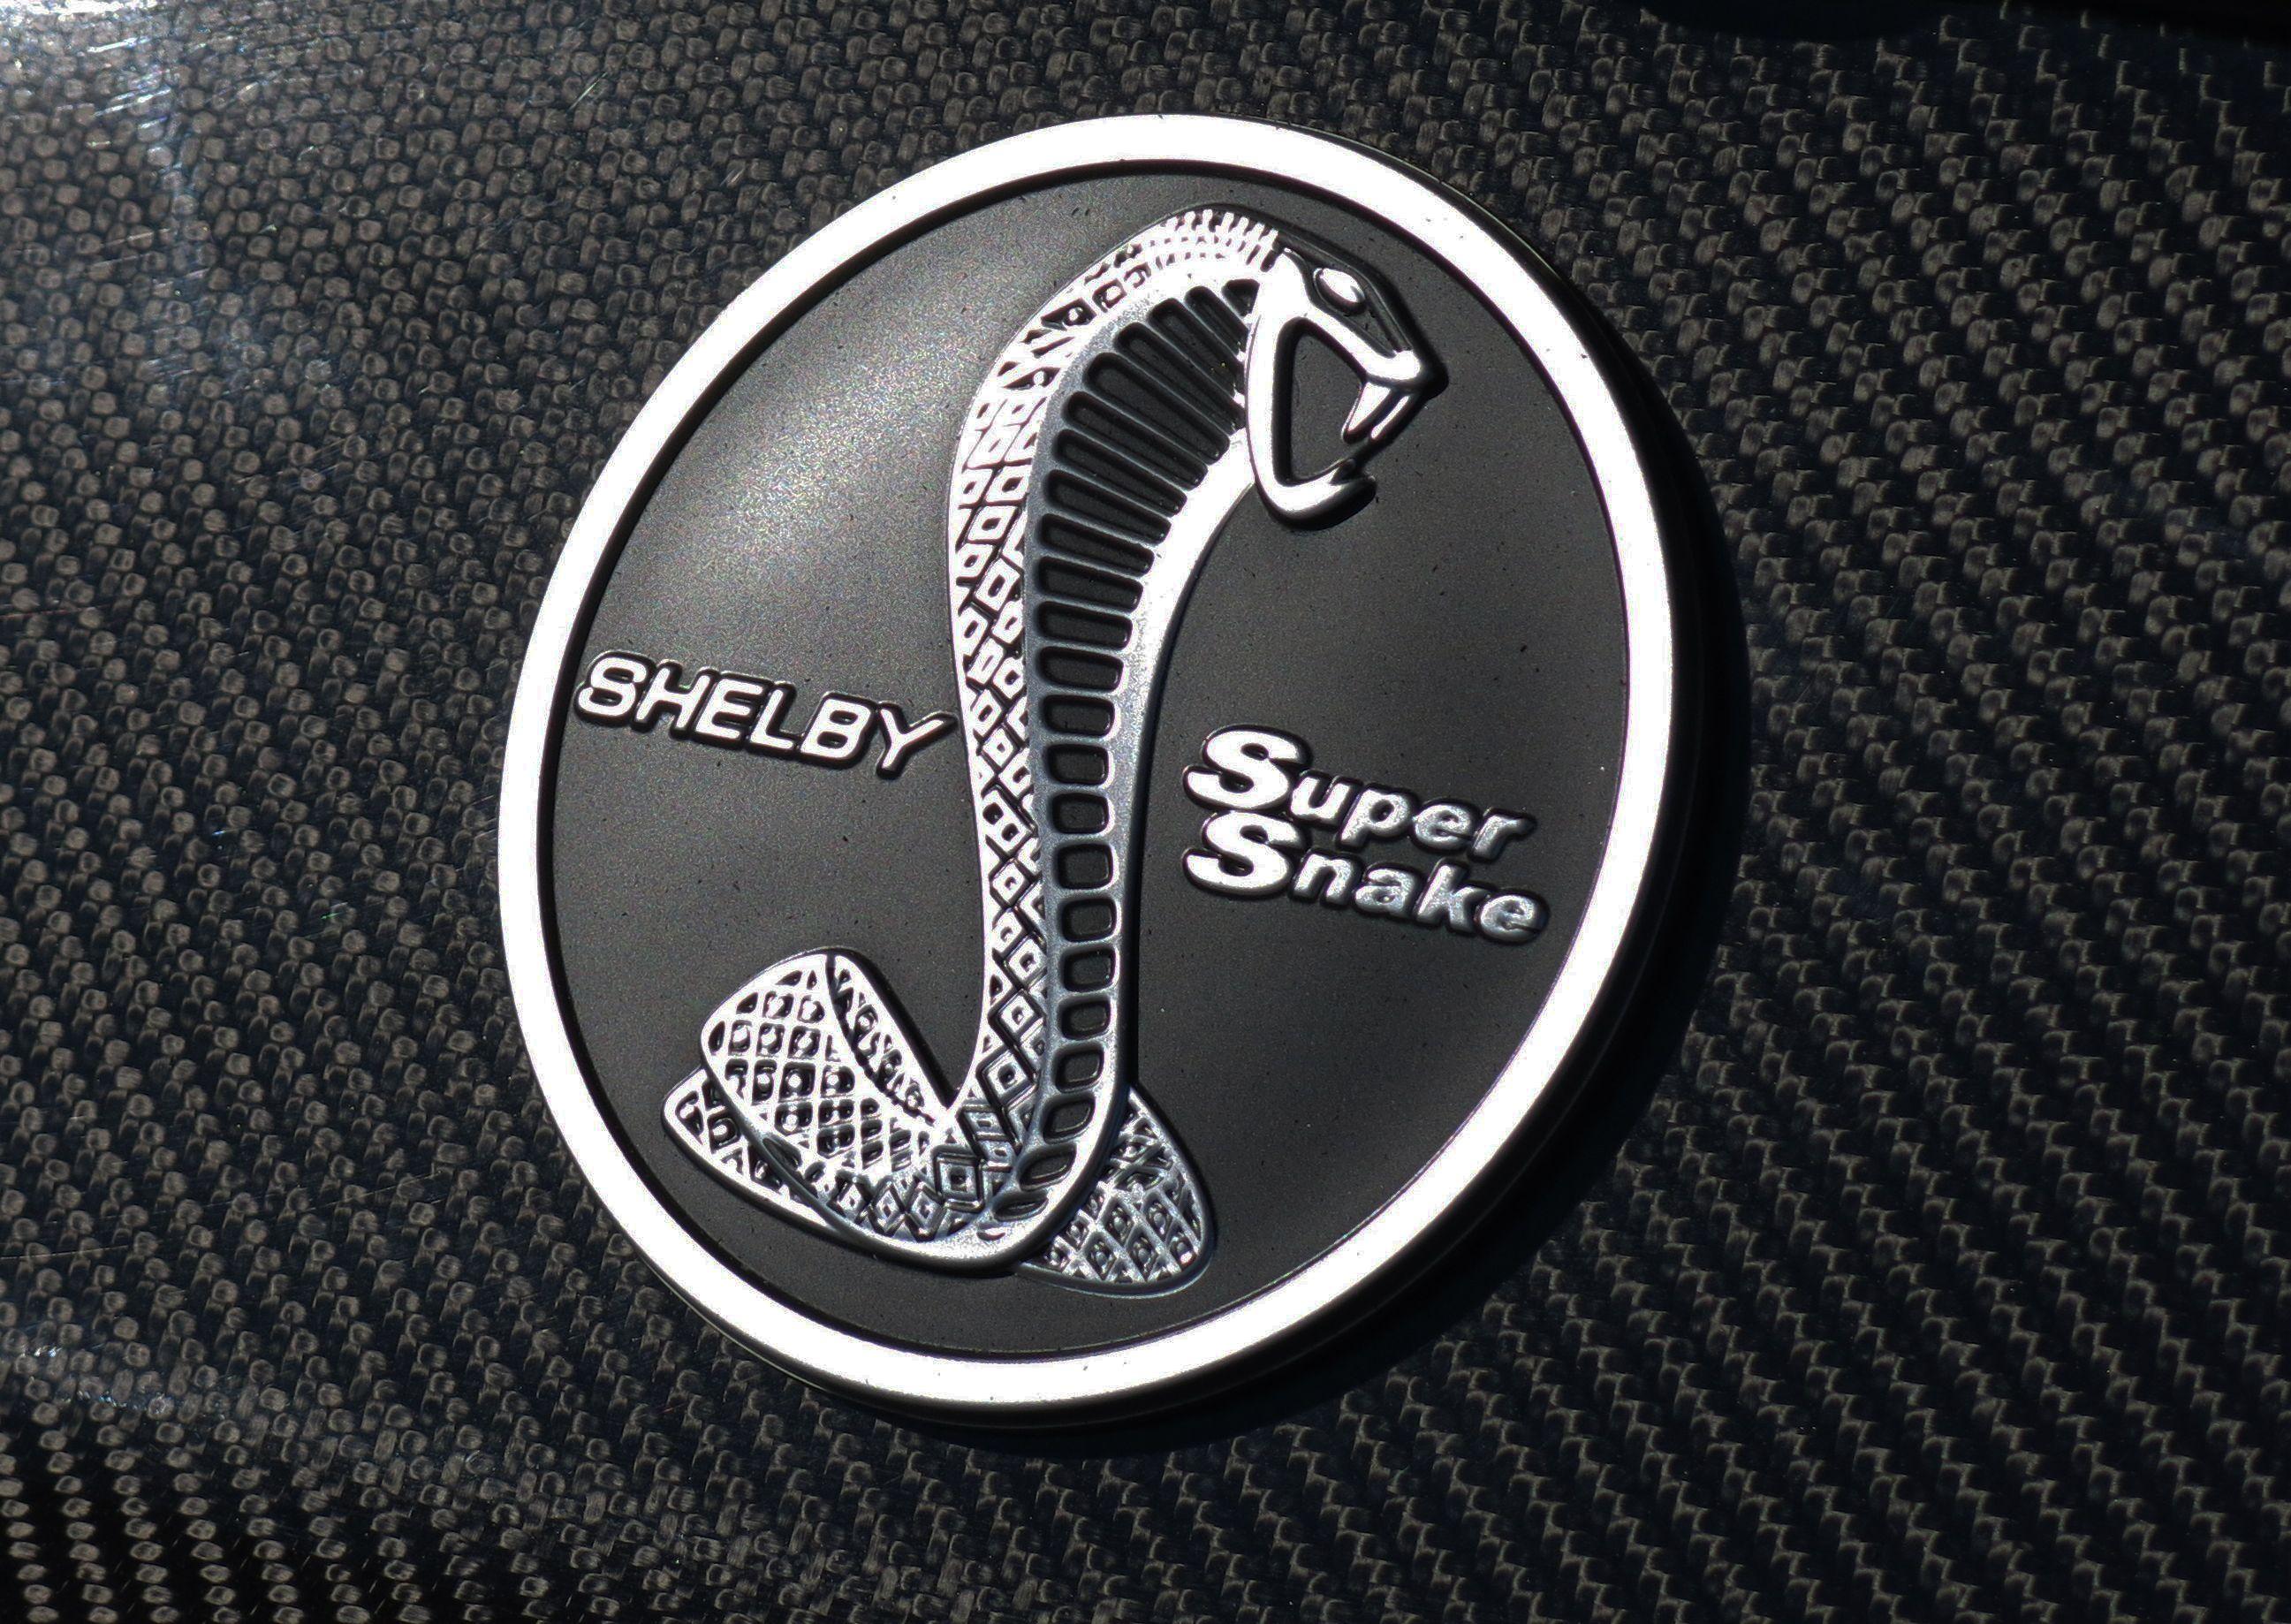 Super Snake Logo - Shelby Super Snake Review